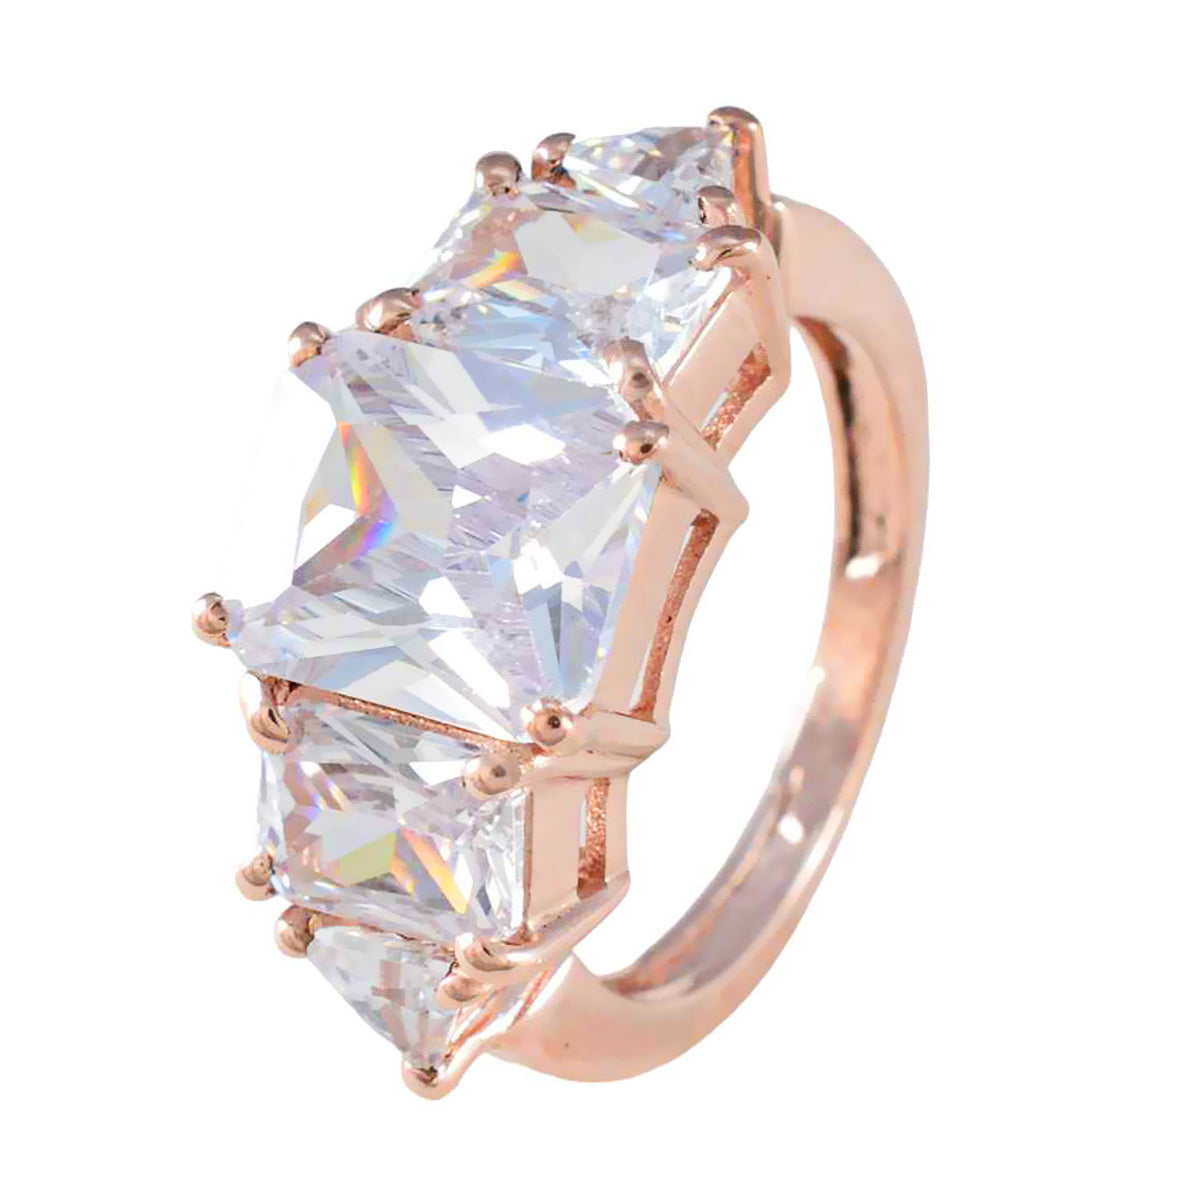 Fabricante riyo, anillo de plata con chapado en oro rosa, piedra cz blanca, ajuste de puntas en múltiples formas, joyería elegante, anillo de Acción de Gracias